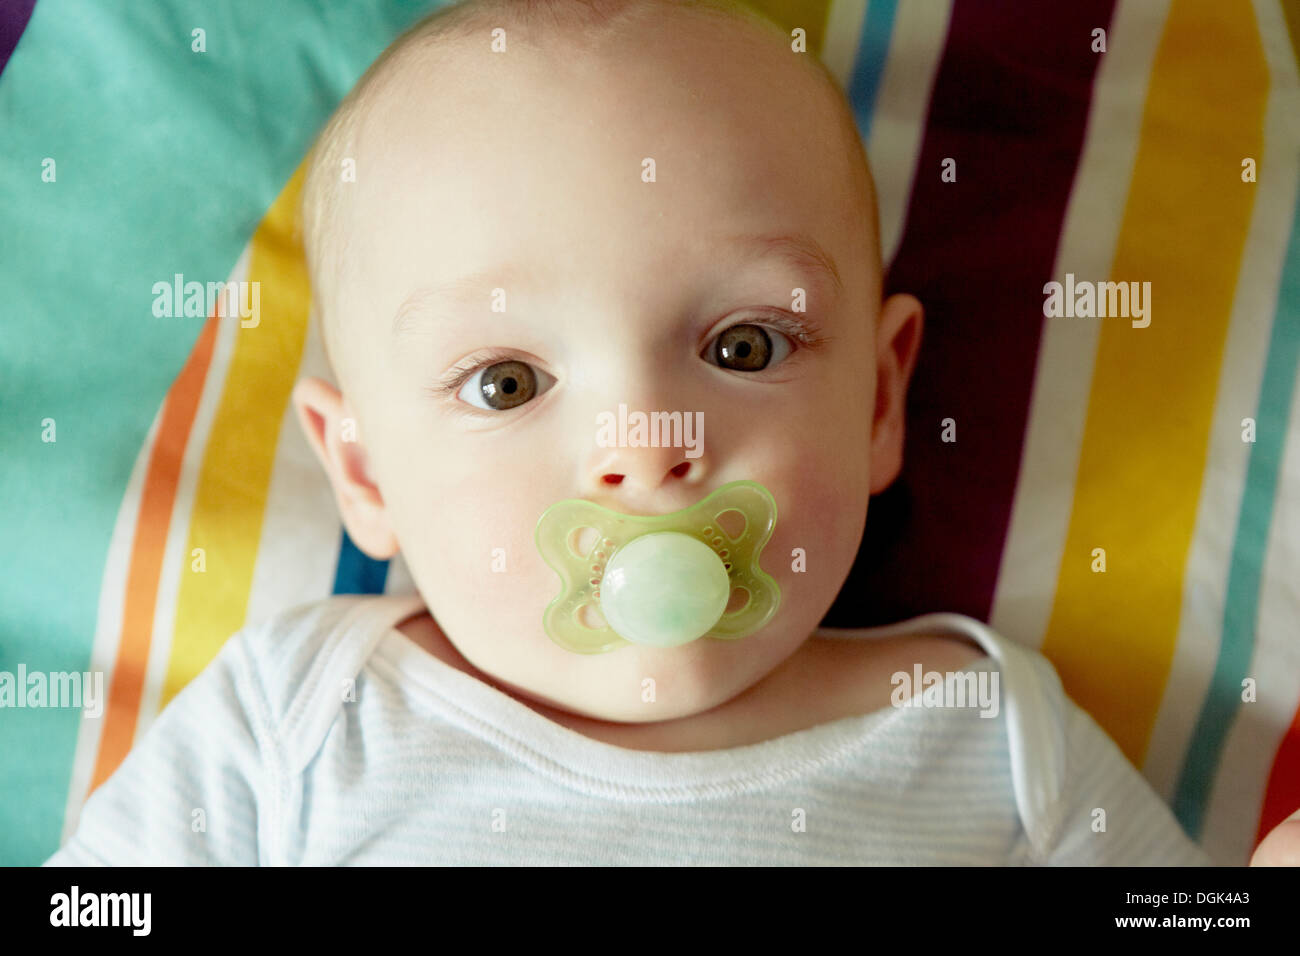 Chupete Bebé Aislado Fotos, retratos, imágenes y fotografía de